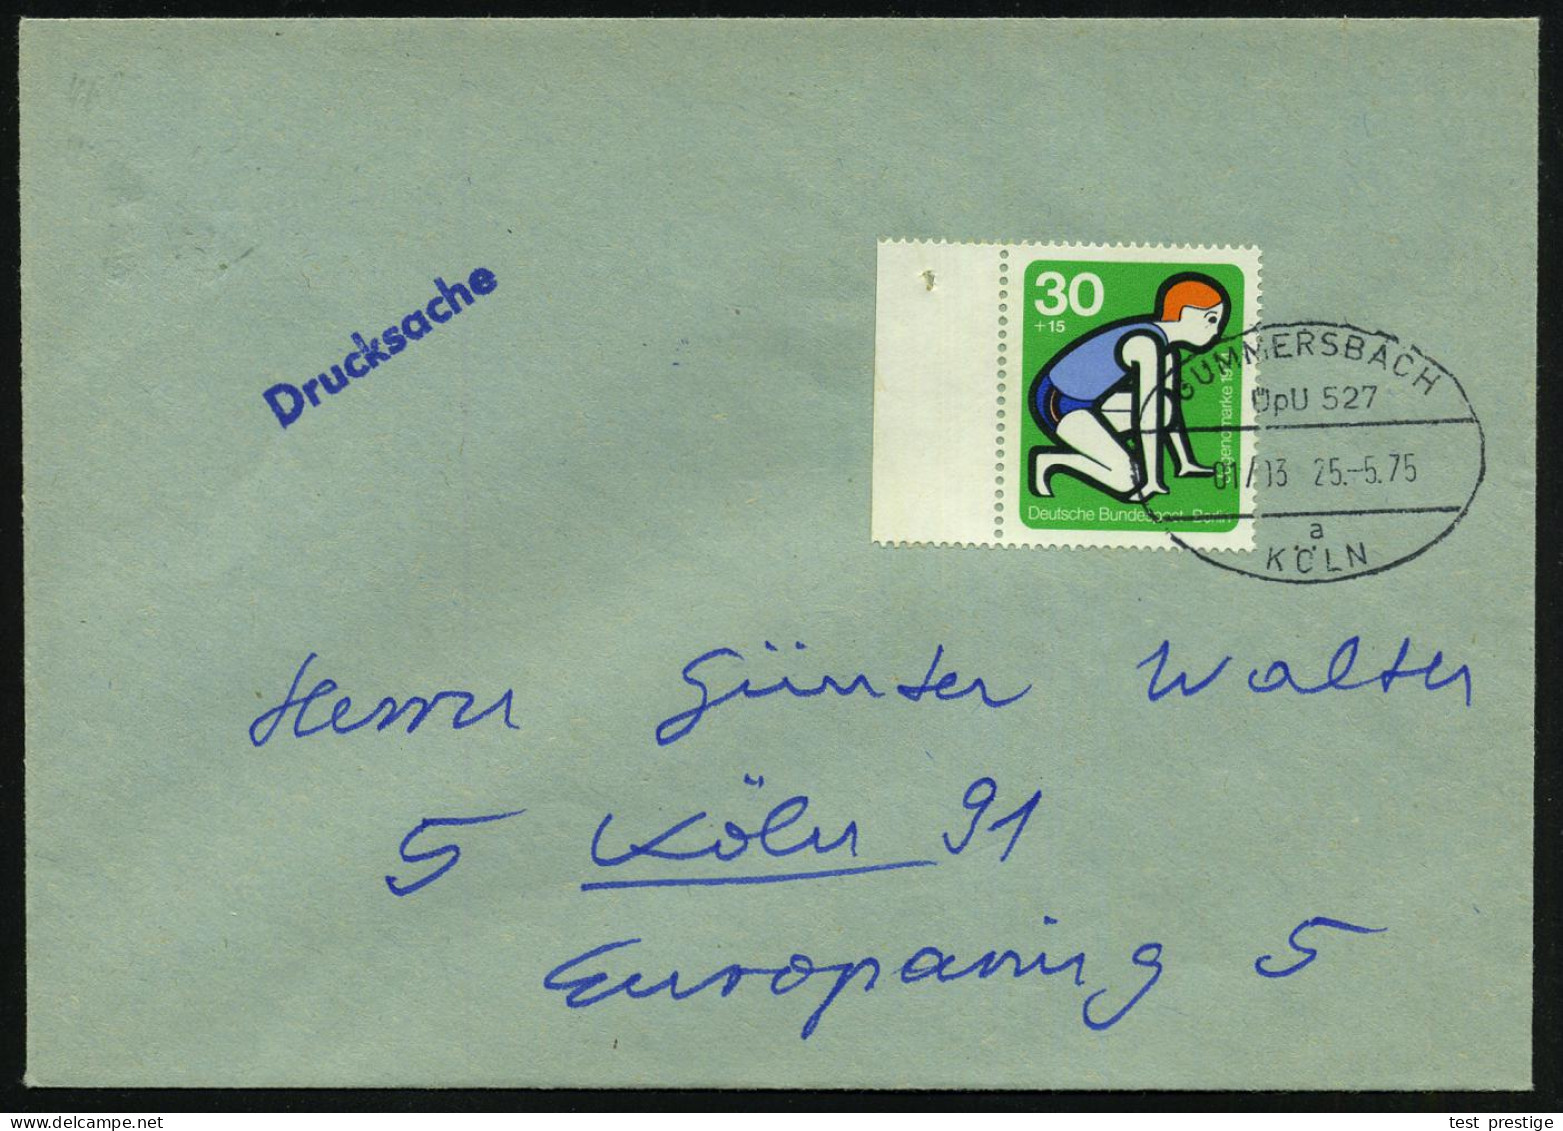 GUMMERSBACH/ ÜpU 527/ 01/ 03/ A/ KÖLN 1975 (25.5.) Oval-Steg = Mobiles Postamt Im Überland-Postomnibus , Klar Gest. Inl. - Coches